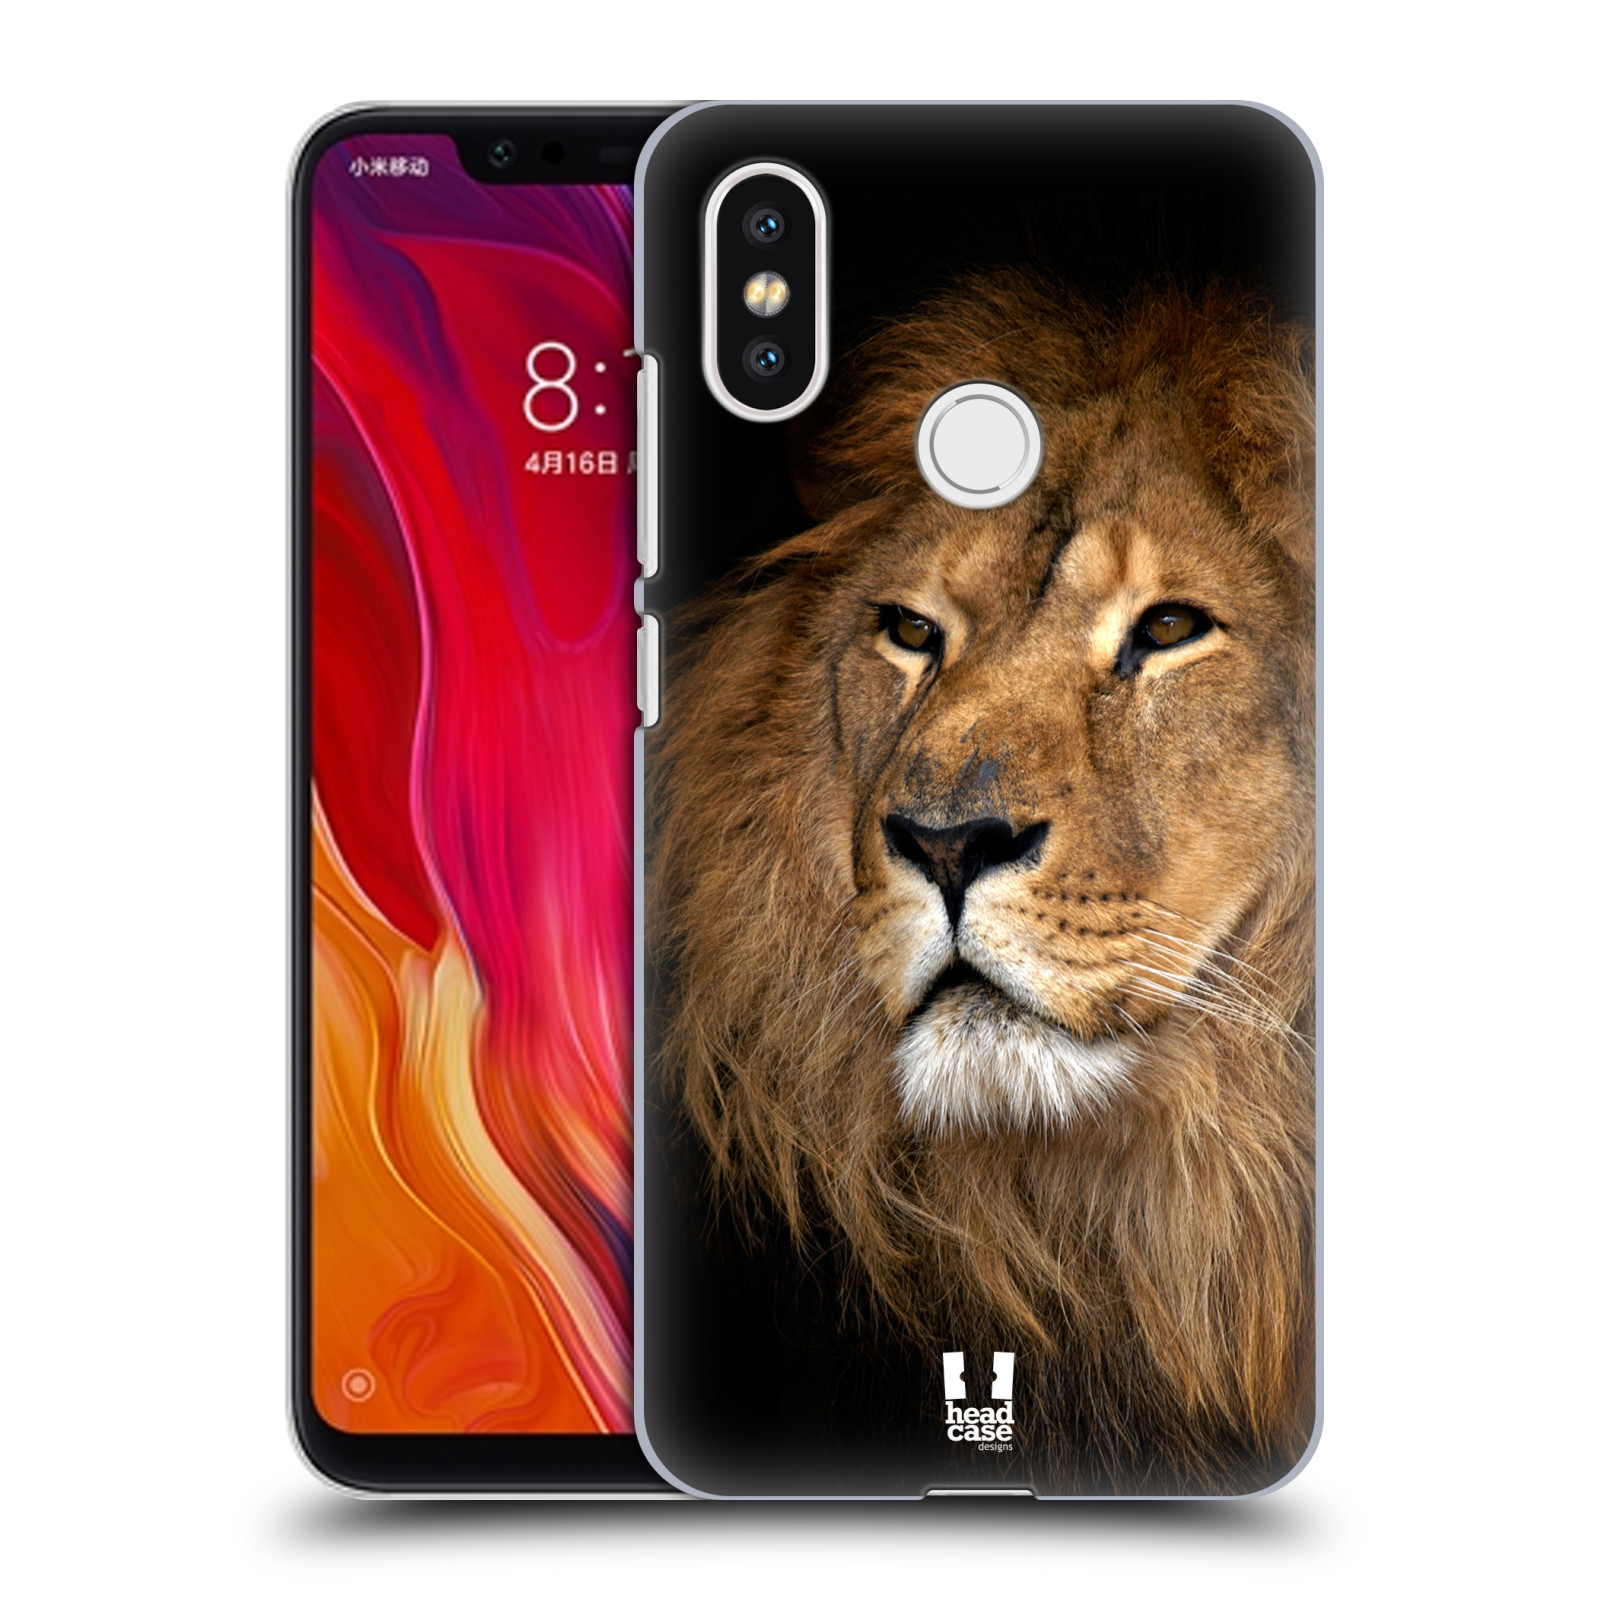 Zadní obal pro mobil Xiaomi Mi 8 - HEAD CASE - Svět zvířat král zvířat Lev